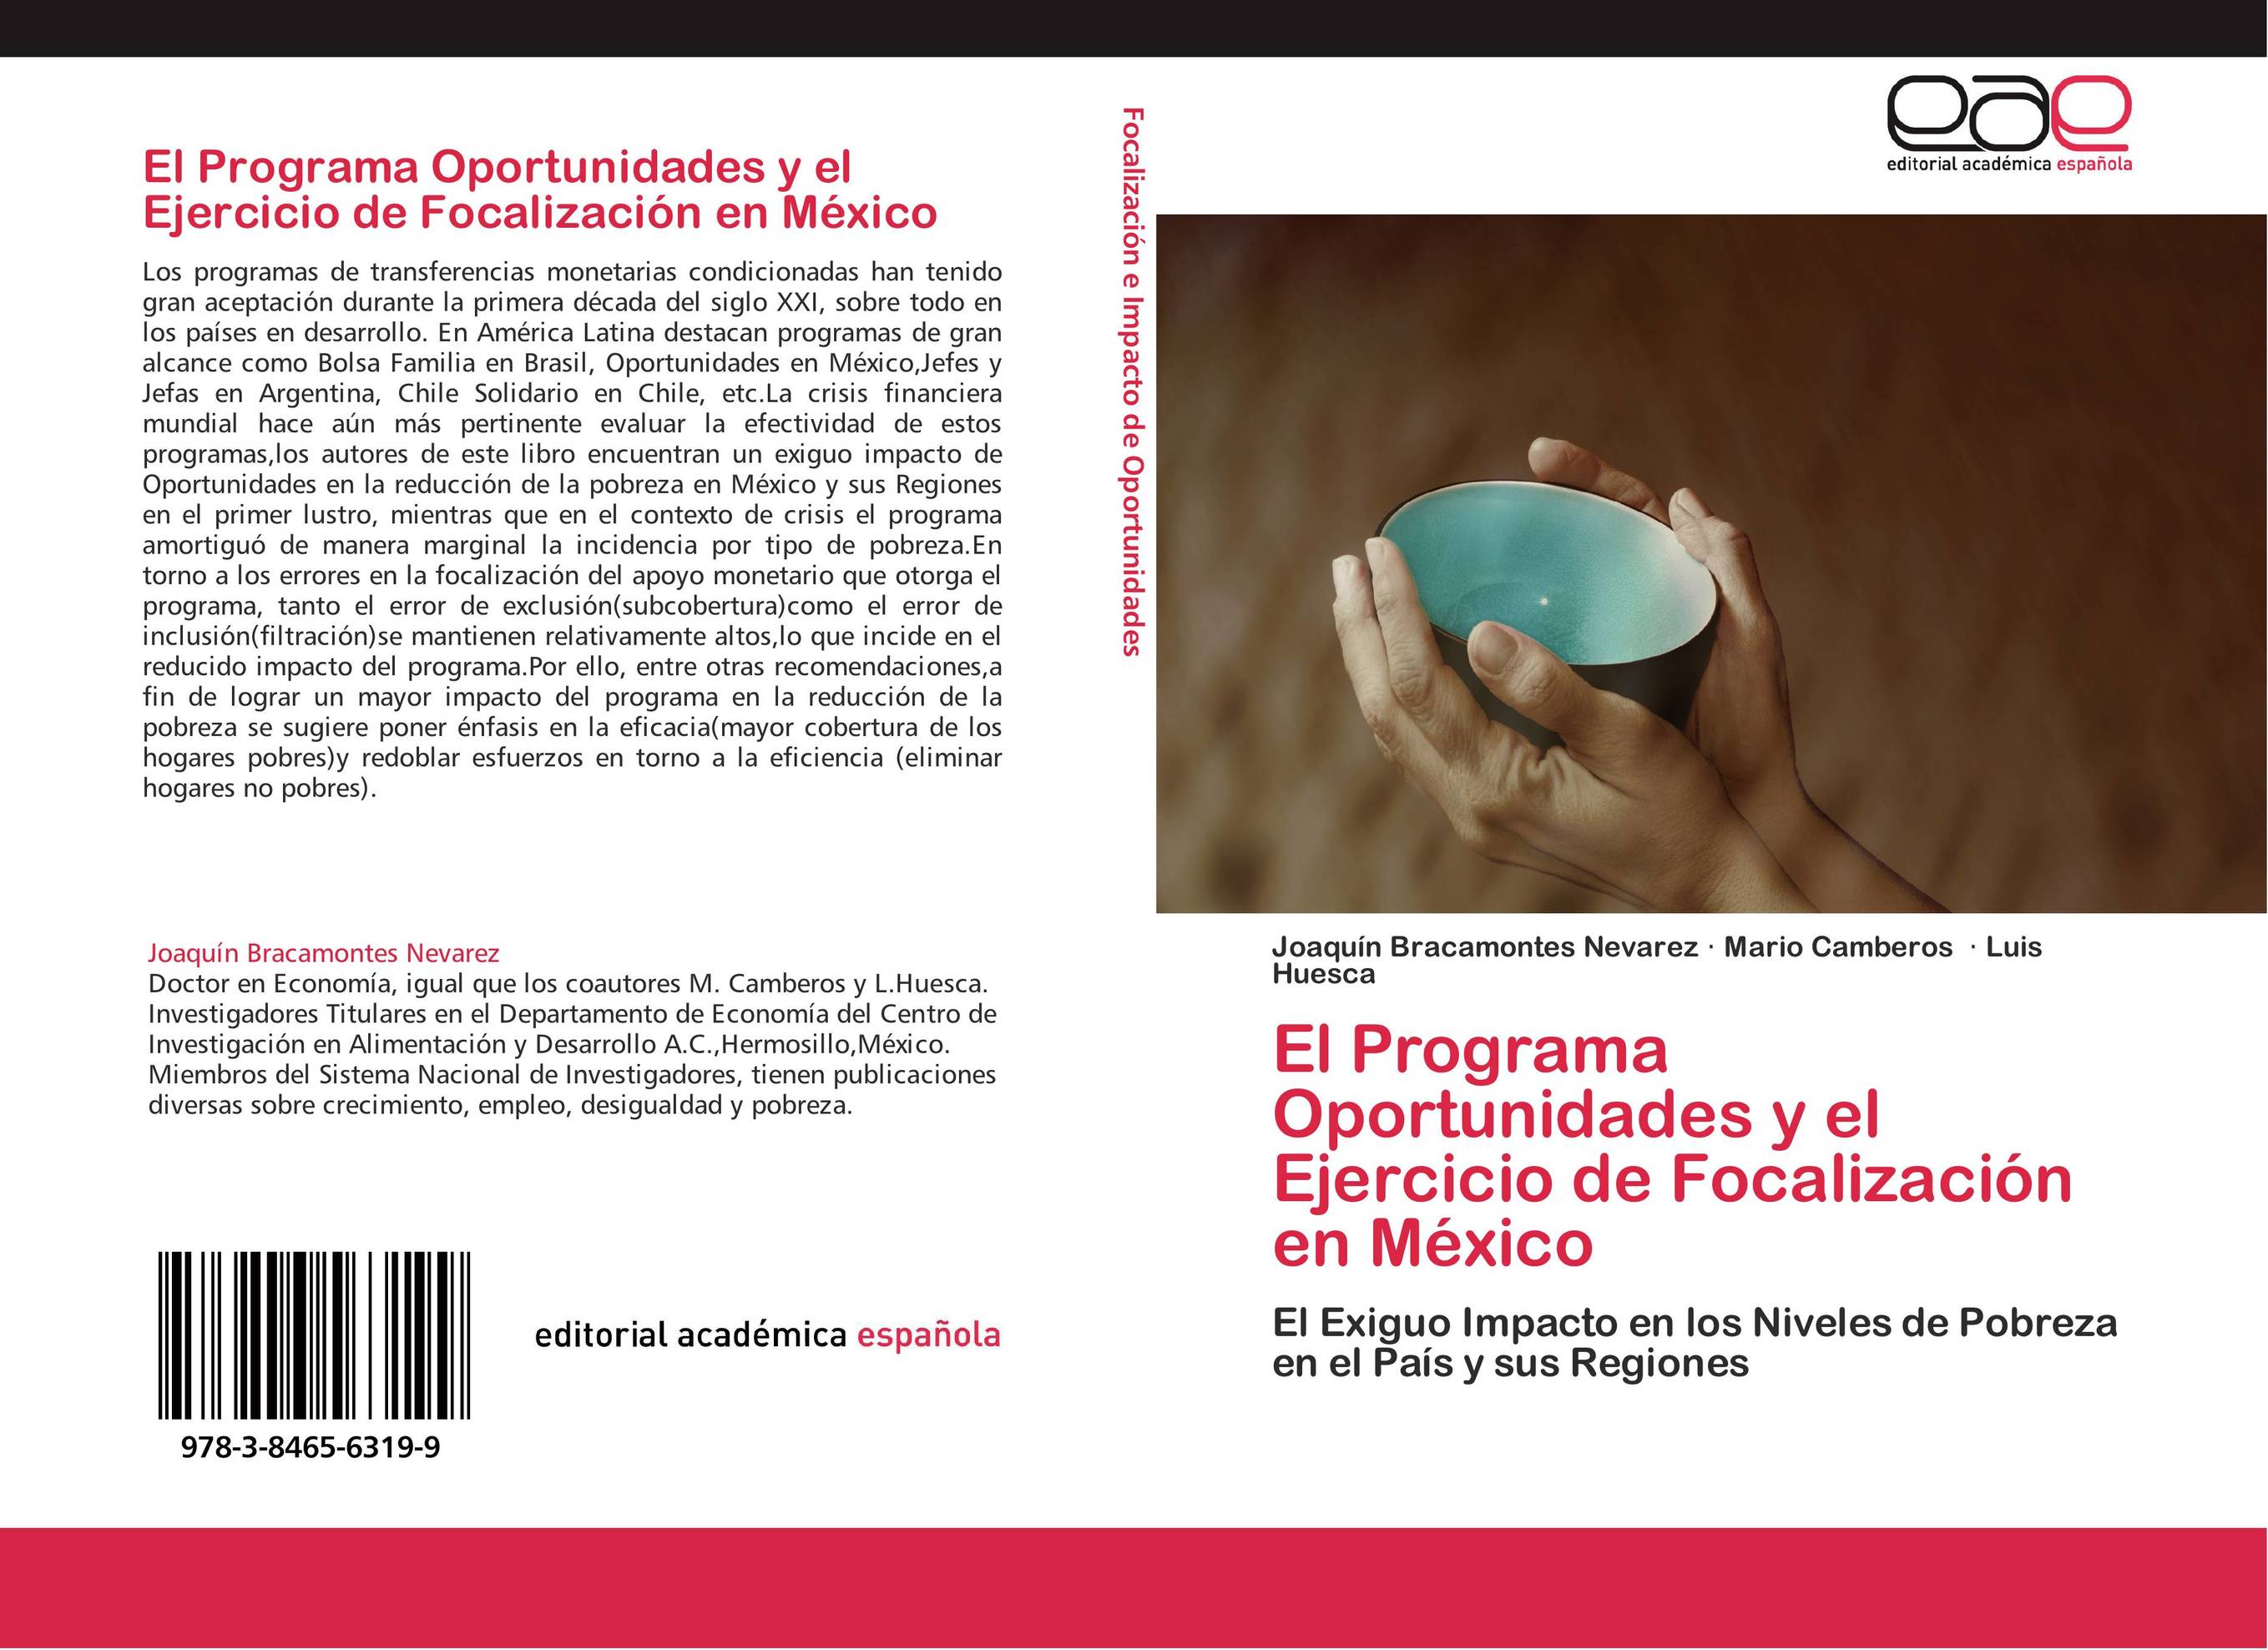 El Programa Oportunidades y el Ejercicio de Focalización en México